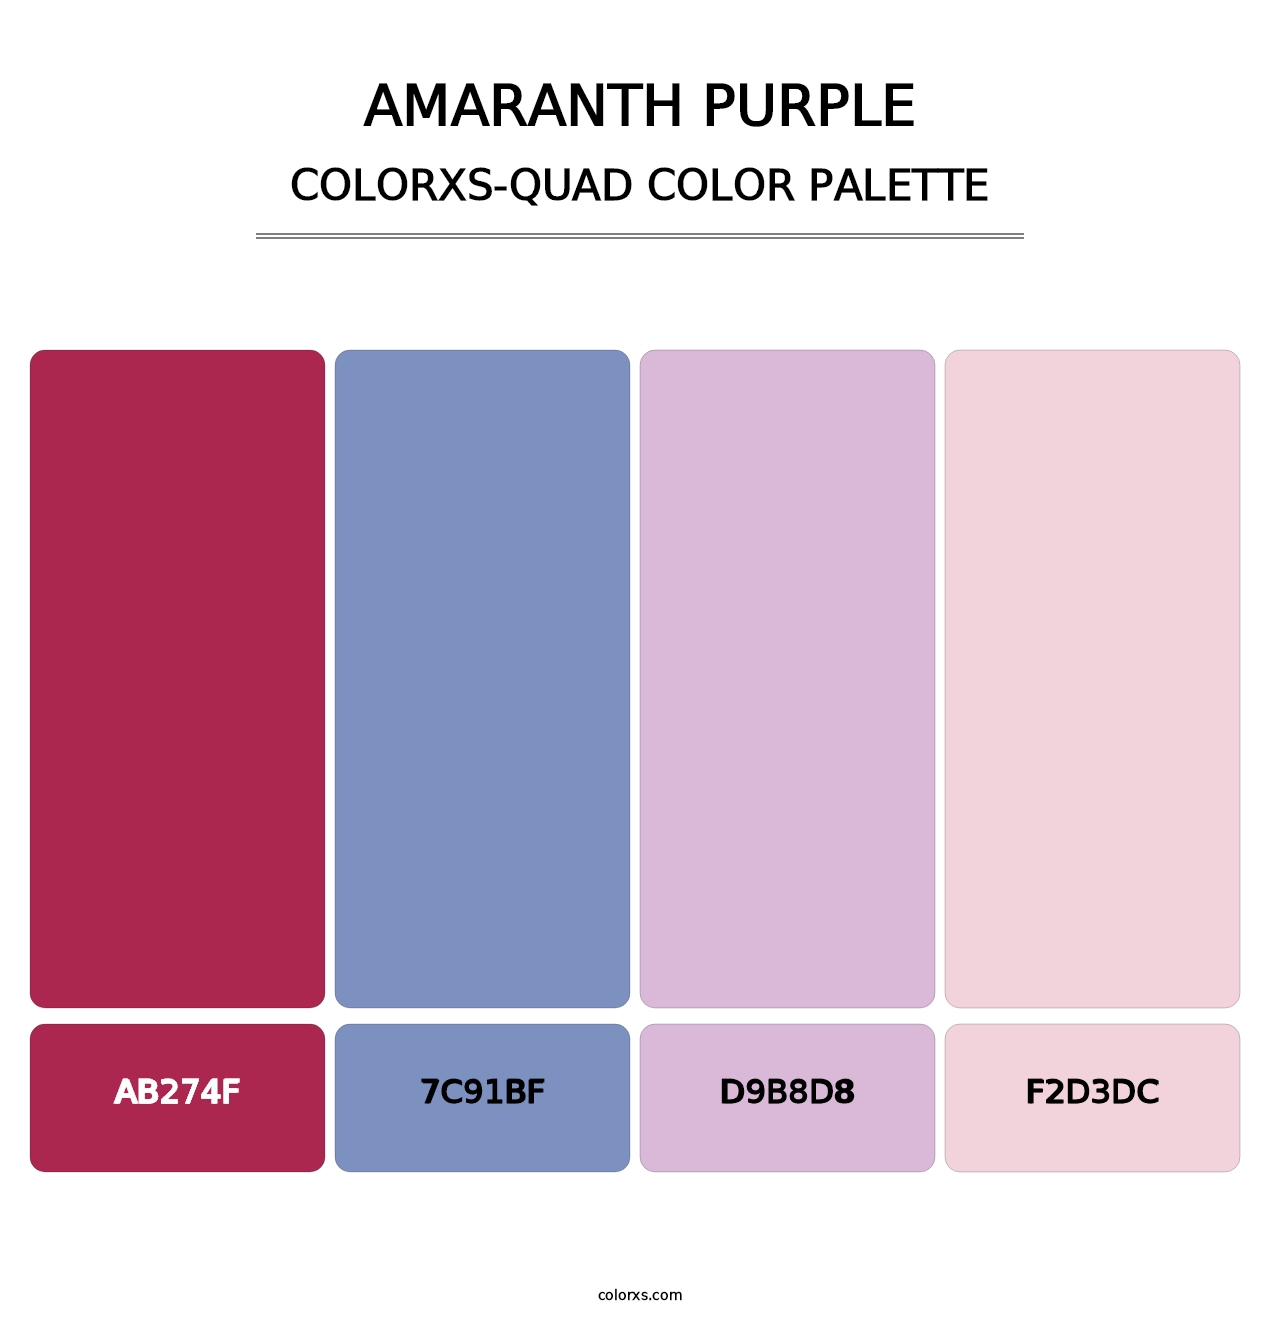 Amaranth Purple - Colorxs Quad Palette